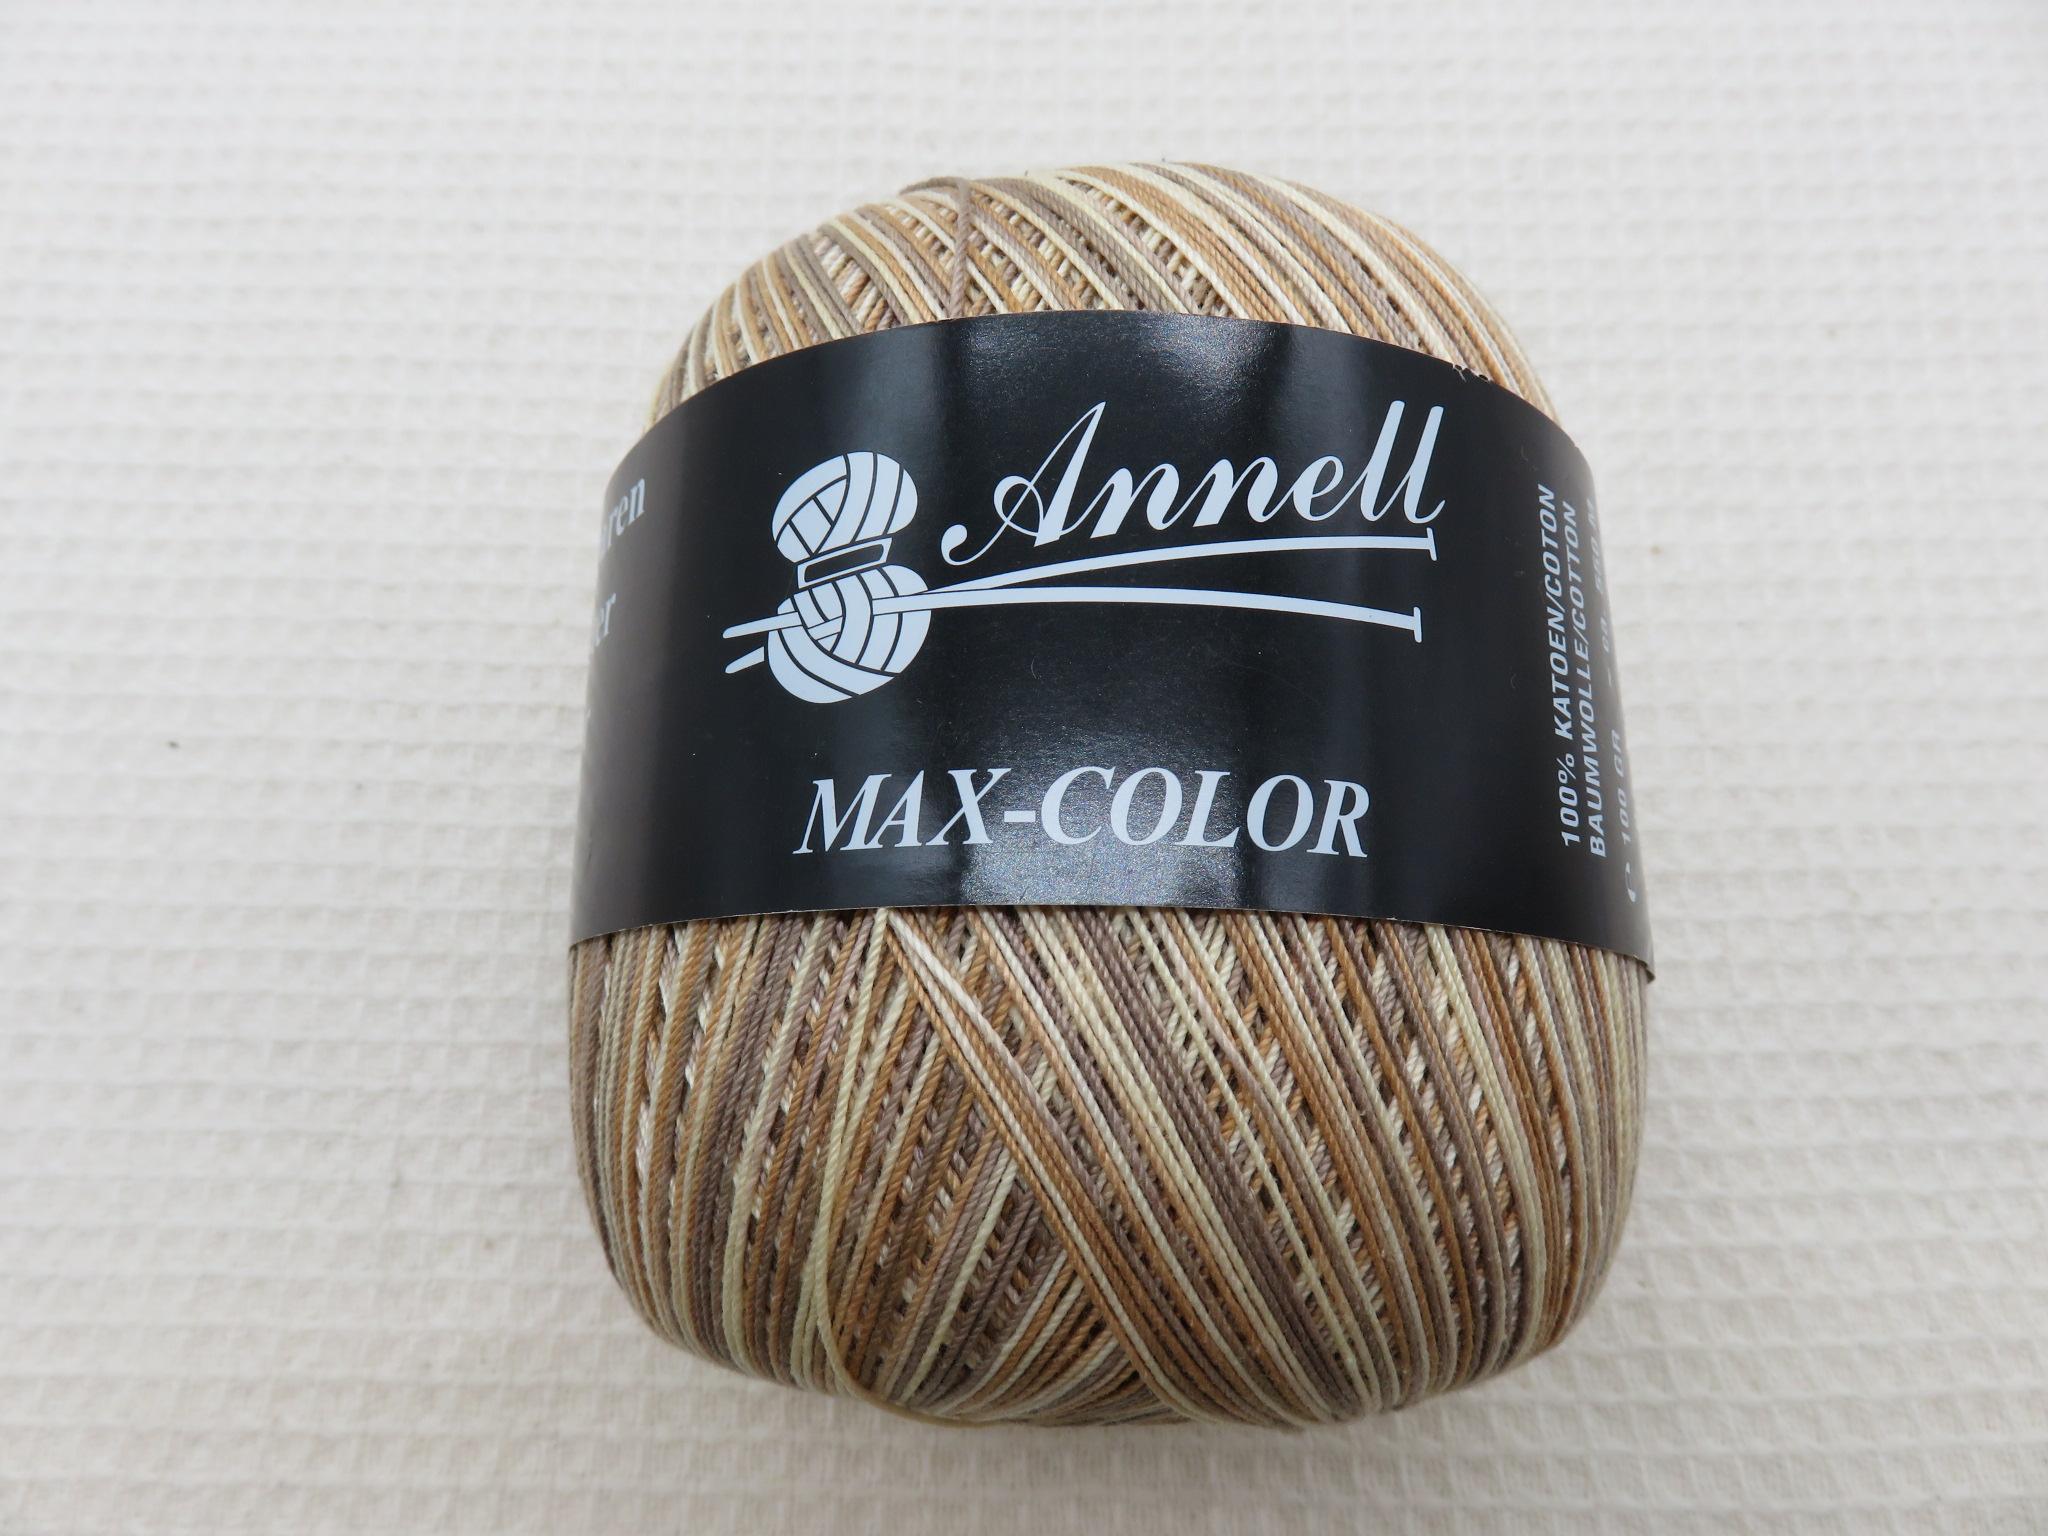 Coton marron Annell pelote Max-color Fil 100% coton